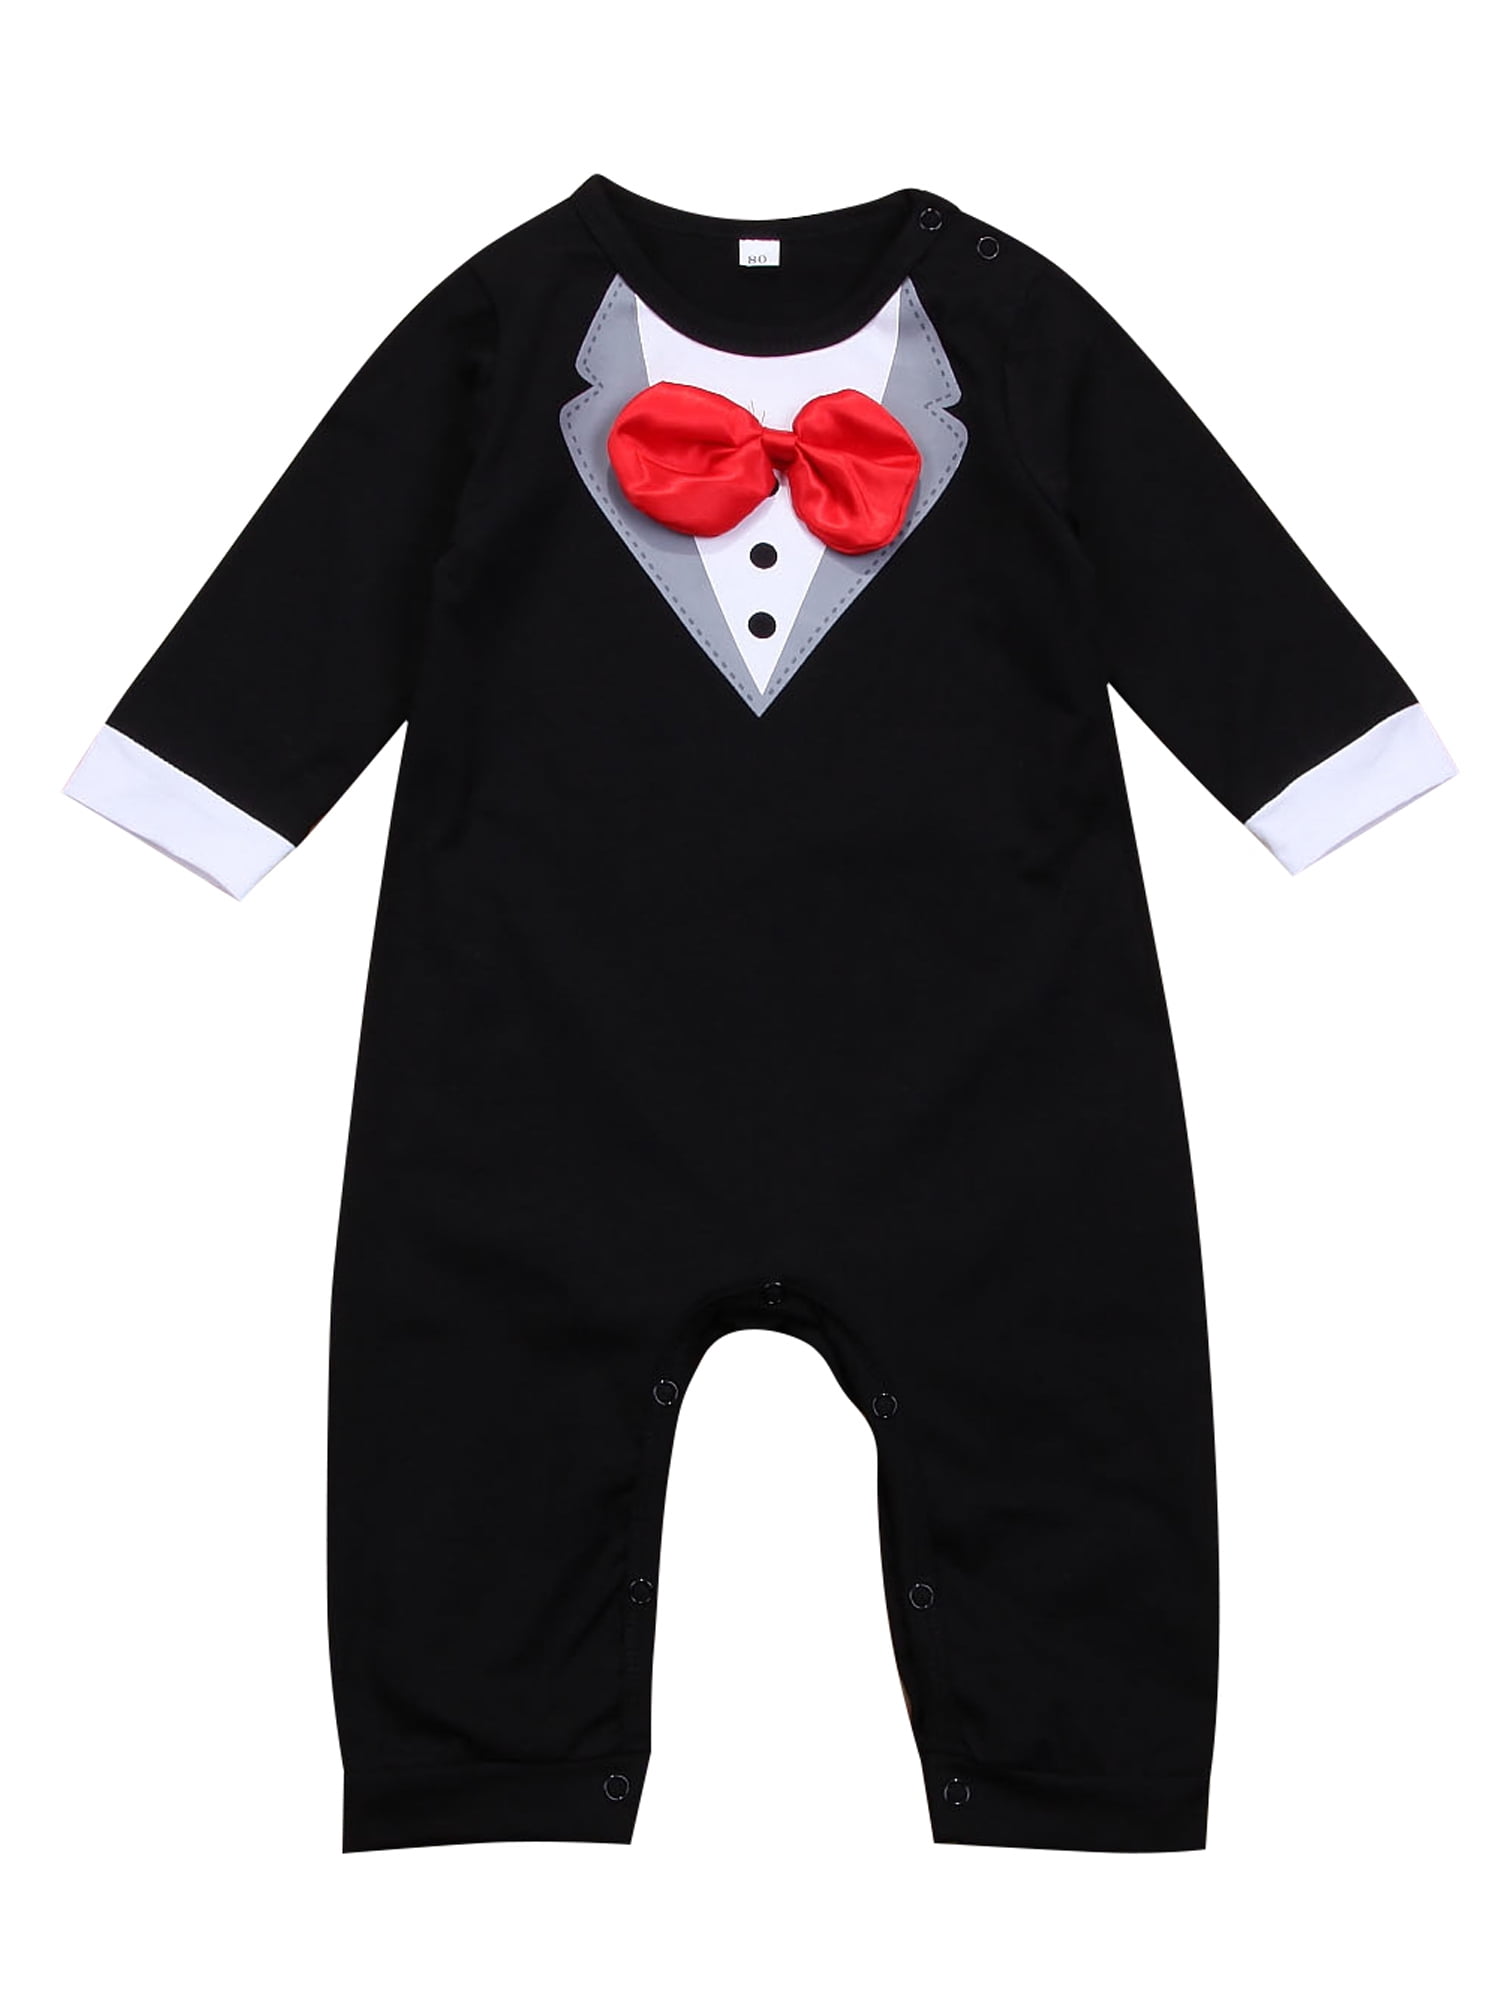 Newborn Baby Boys Romper Outfit One-Piece Bowtie Jumpsuit Bodysuit Party Clothes 